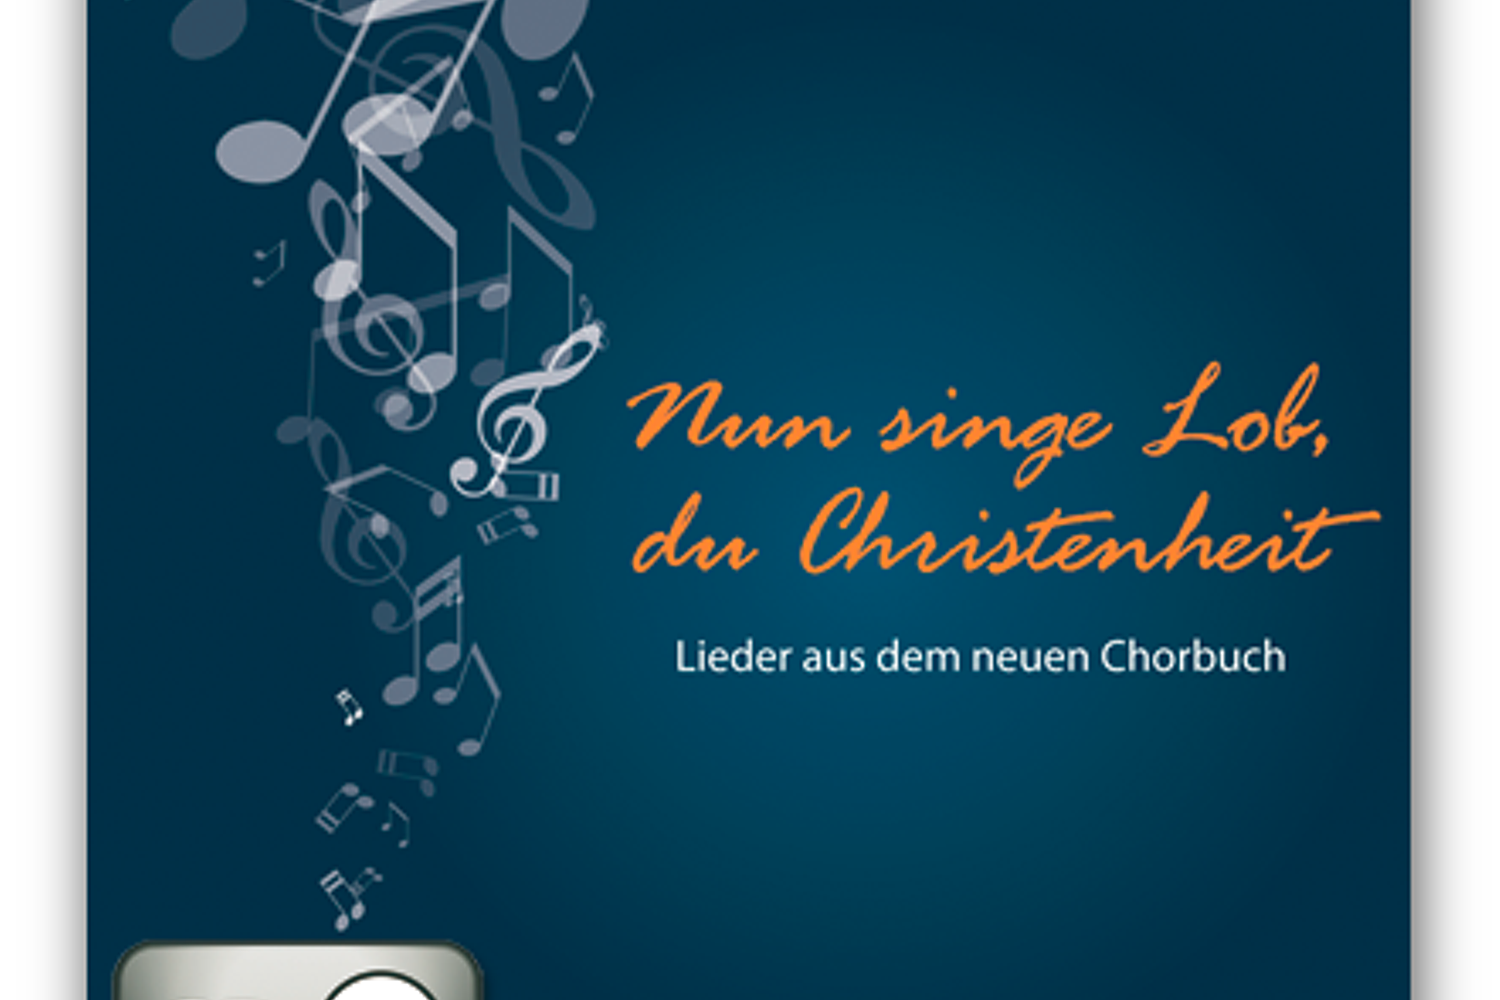 CD mit ausschließlich neuen Liedern aus dem neuen Chorbuch, erhältlich im Bischoff-Verlag